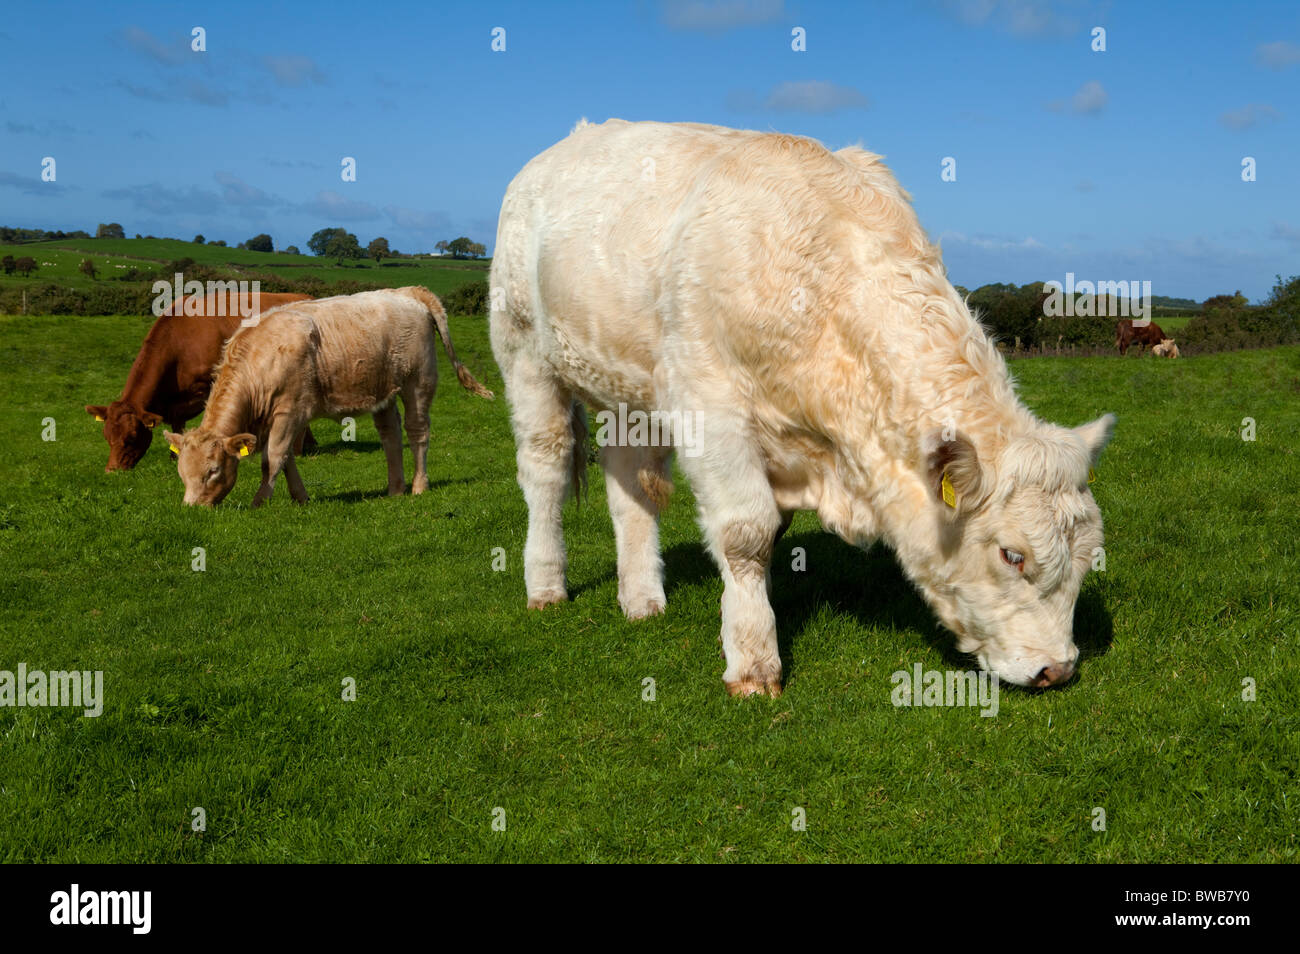 Charolais Bullock, Cattle near Carrowmore, County Sligo, Ireland Stock Photo